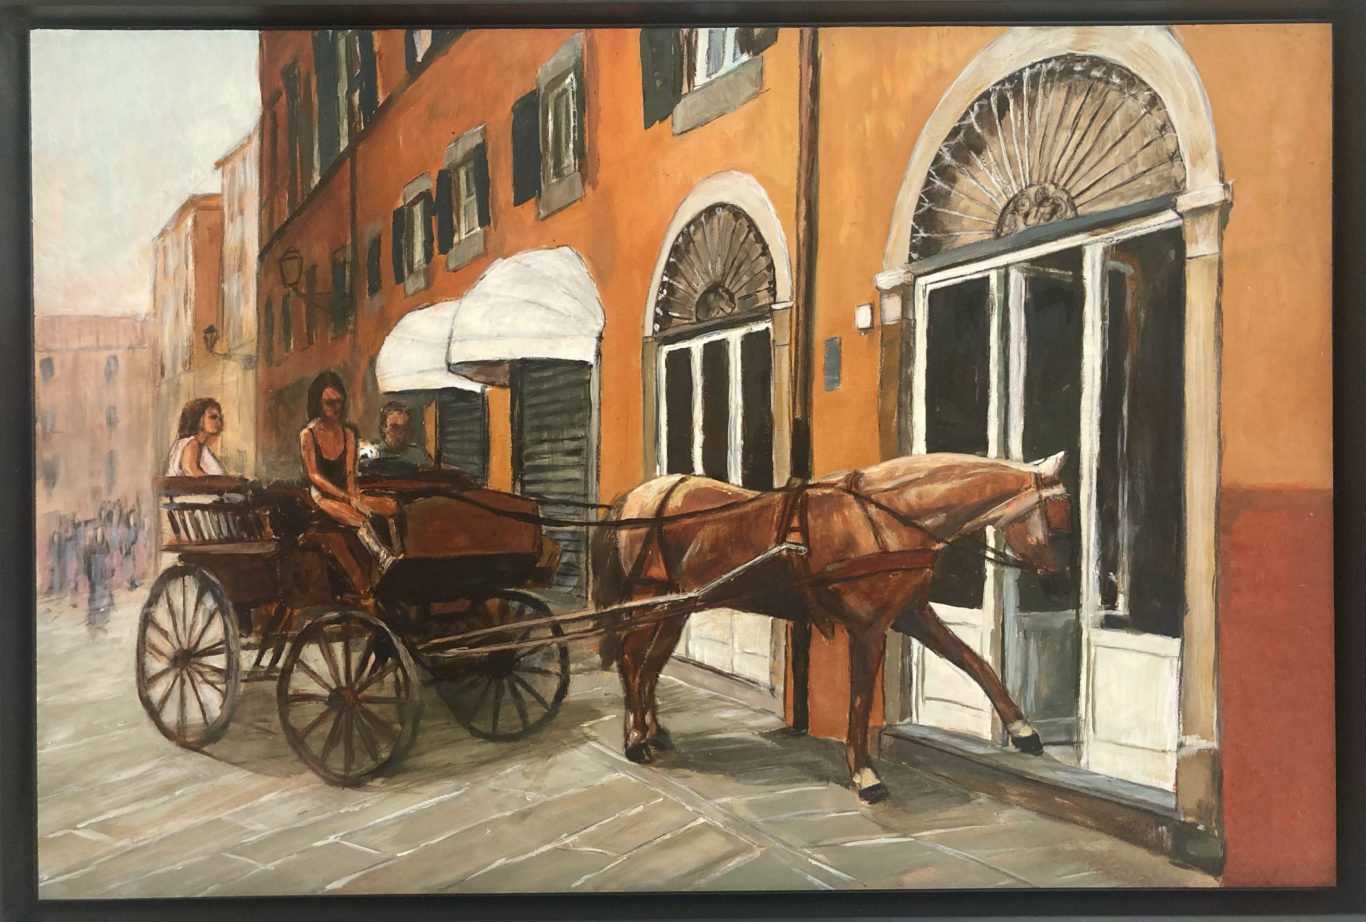 dipinto tecnica acrilico su tavola con soggetto la carrozza per turisti presso l'hotel renaissance tuscany in piazza Napoleone che fu sede del ristorante stellato il giglio